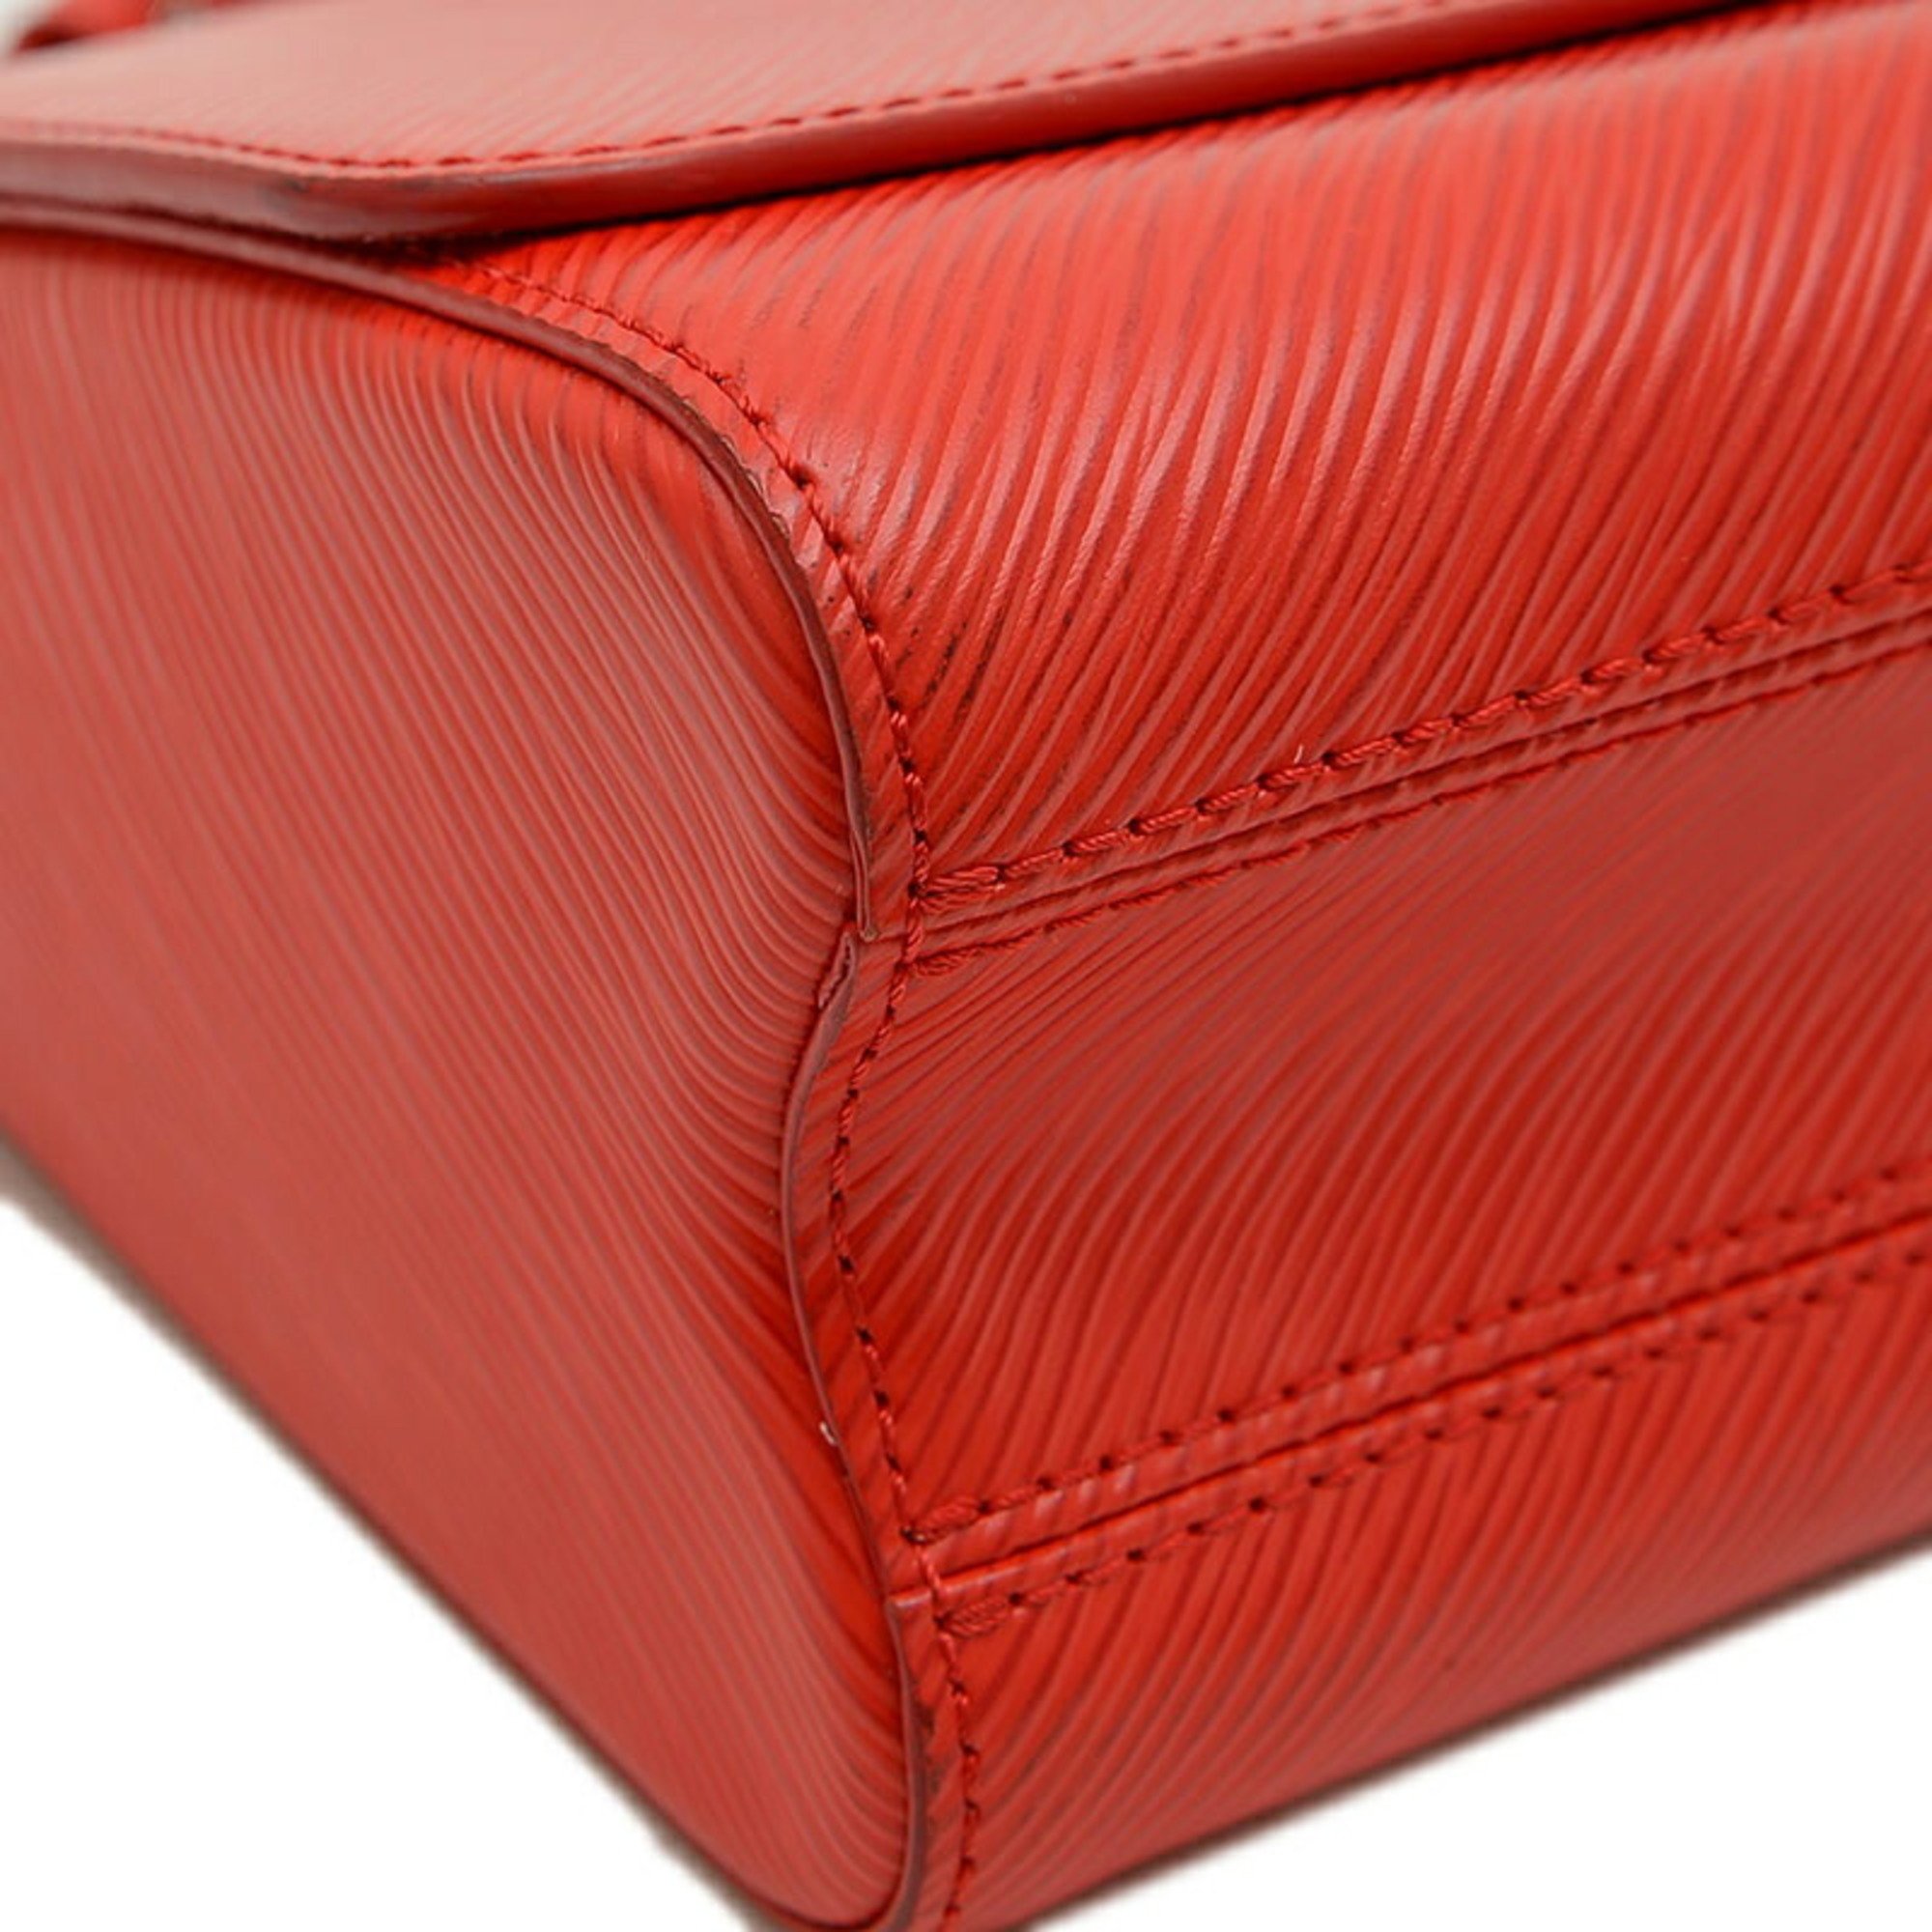 Louis Vuitton Epi Twist MM Chain Shoulder Bag Coquelicot M50523